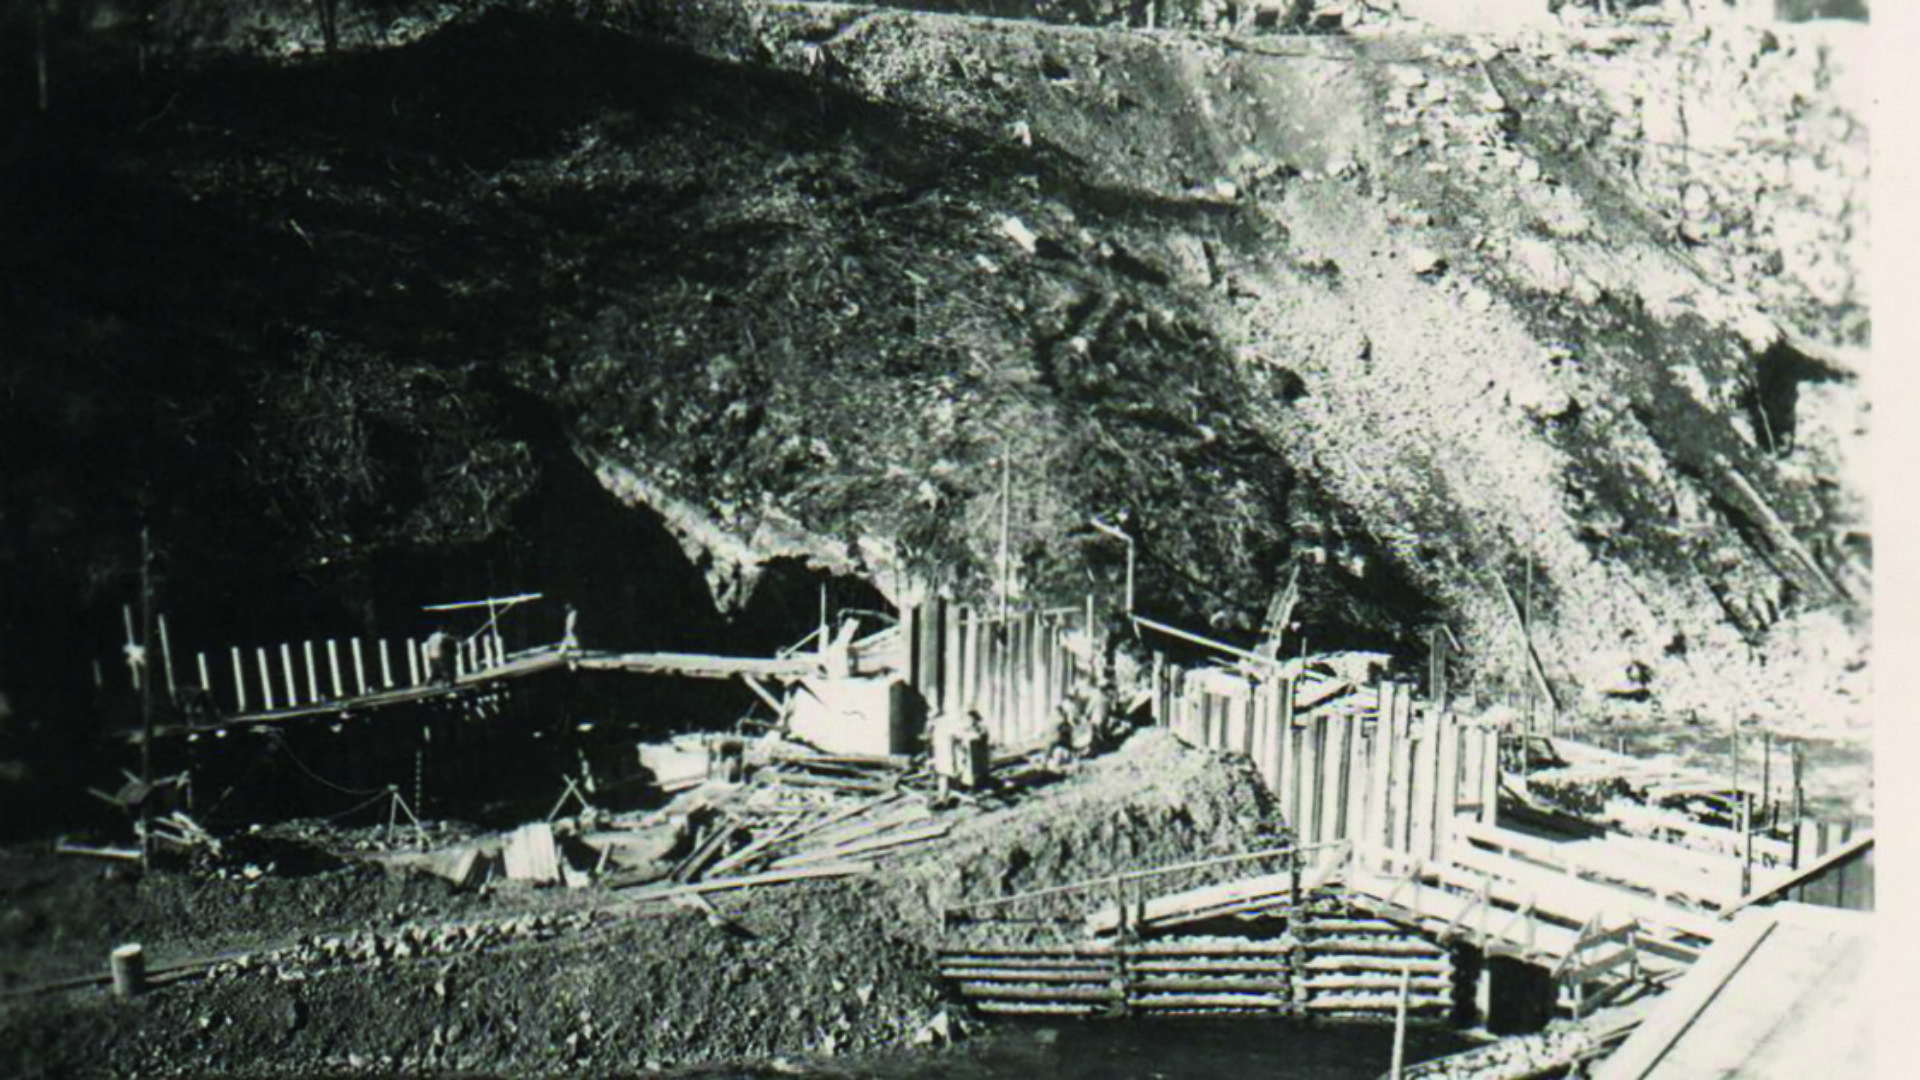 60 m3 de béton emportés par le Doubs en furie, et galerie creusée pour atteindre le point d’emboitement du mur du barrage (Photos jpm)